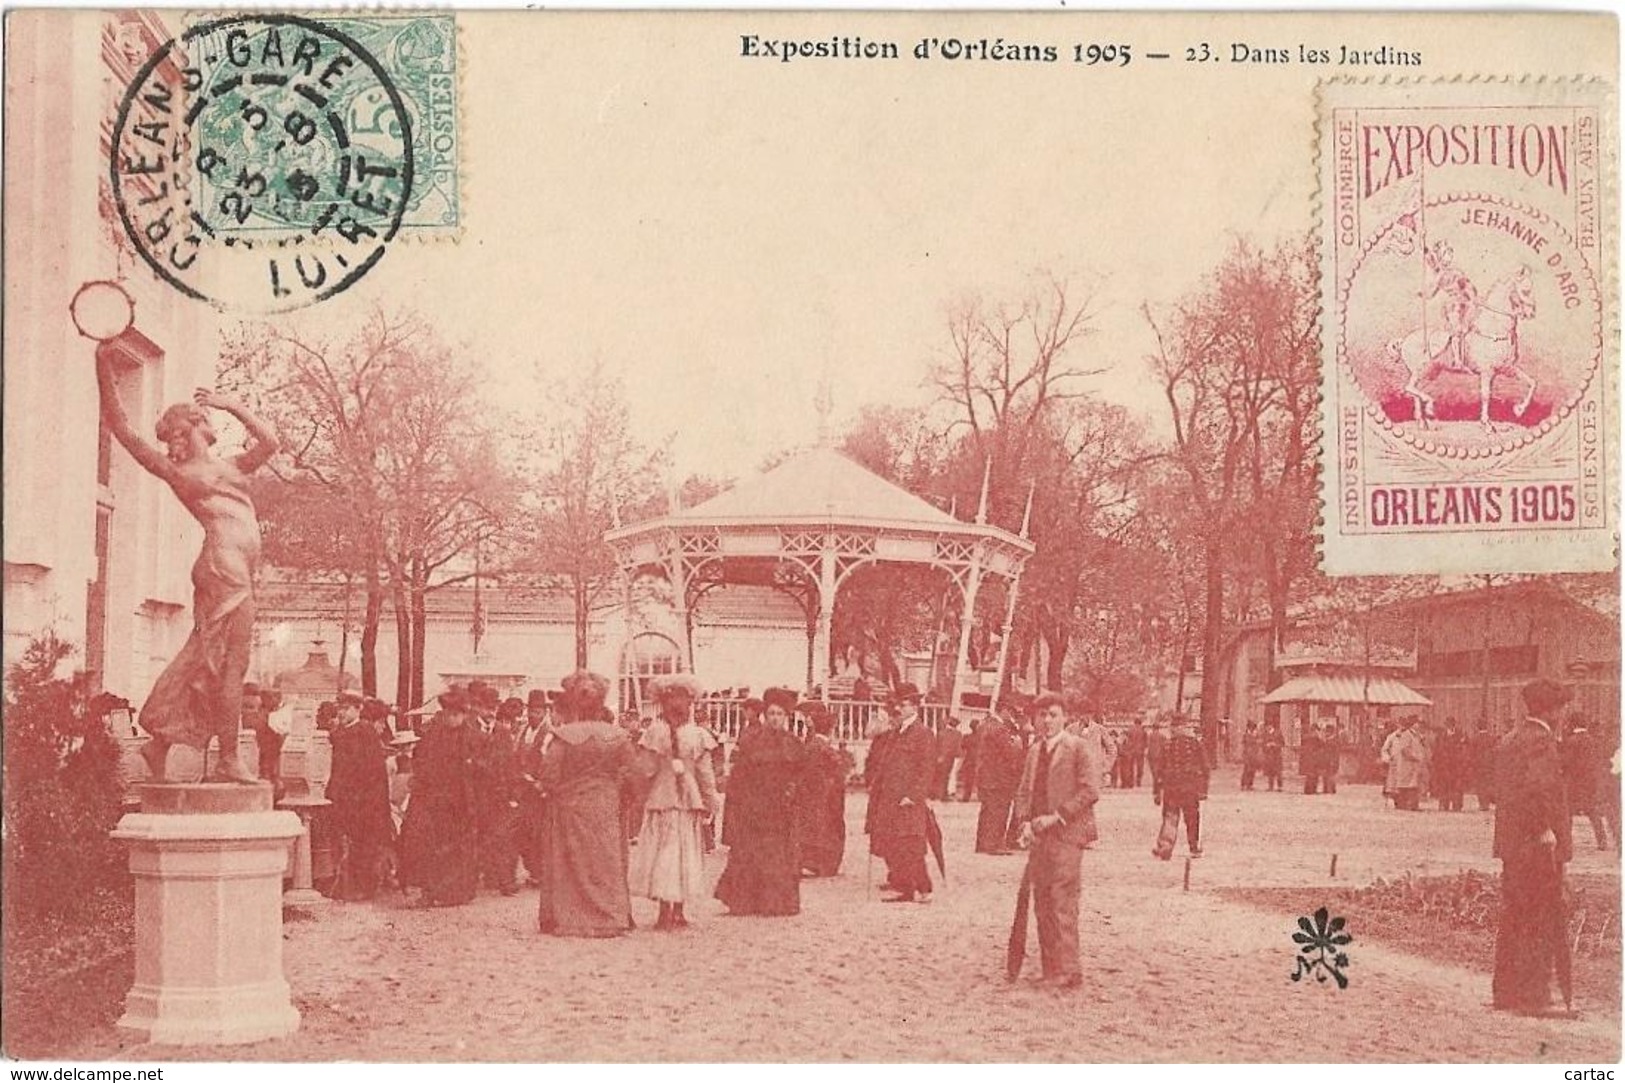 D45 - ORLEANS -EXPOSITION D'ORLEANS 1905 - DANS LES JARDINS -timbre Exposition Orléans 1905-Nombreuses Personnes-Kiosque - Orleans